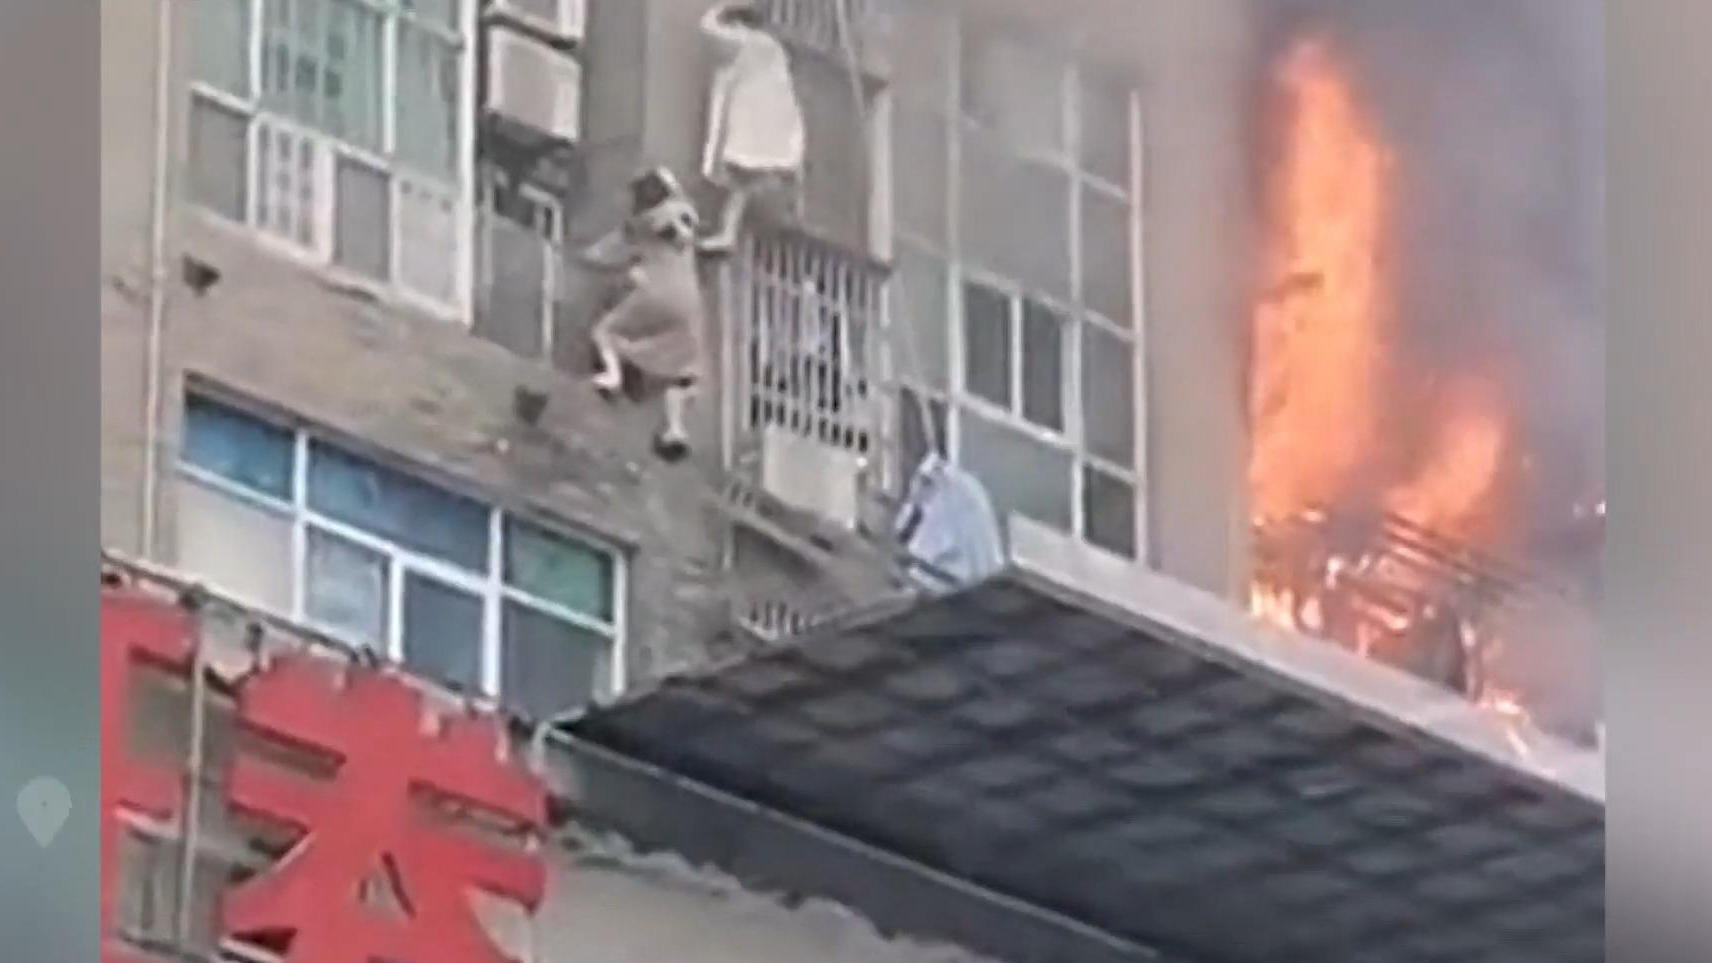 La donna emerge dal grattacielo in fiamme, fuggendo dal mare di fiamme!